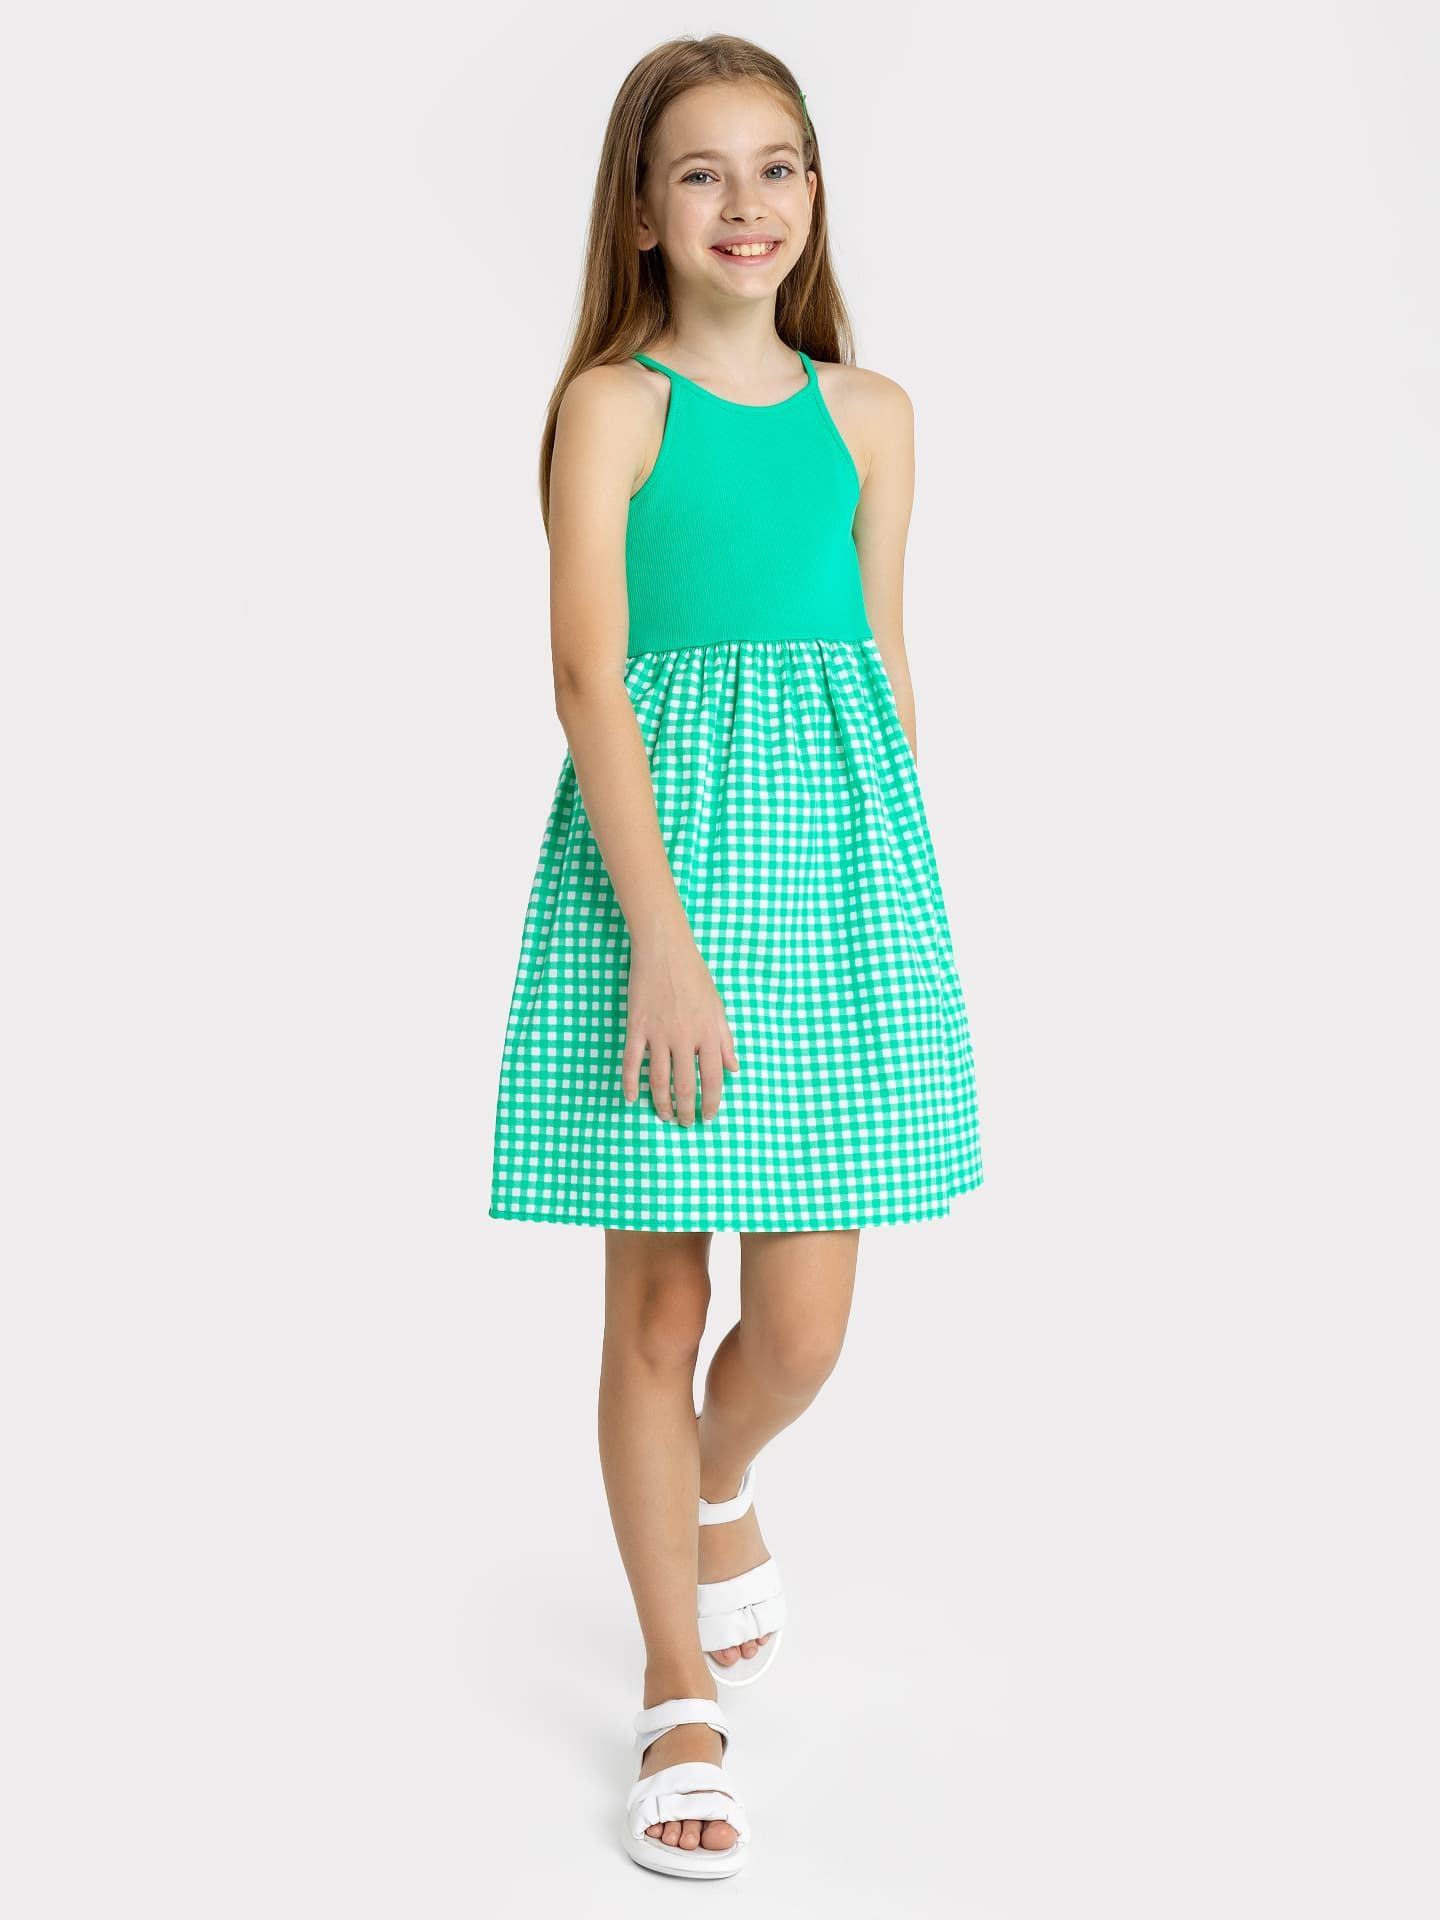 Сарафан на бретелях для девочек, в зеленом цвете, юбка в клетку